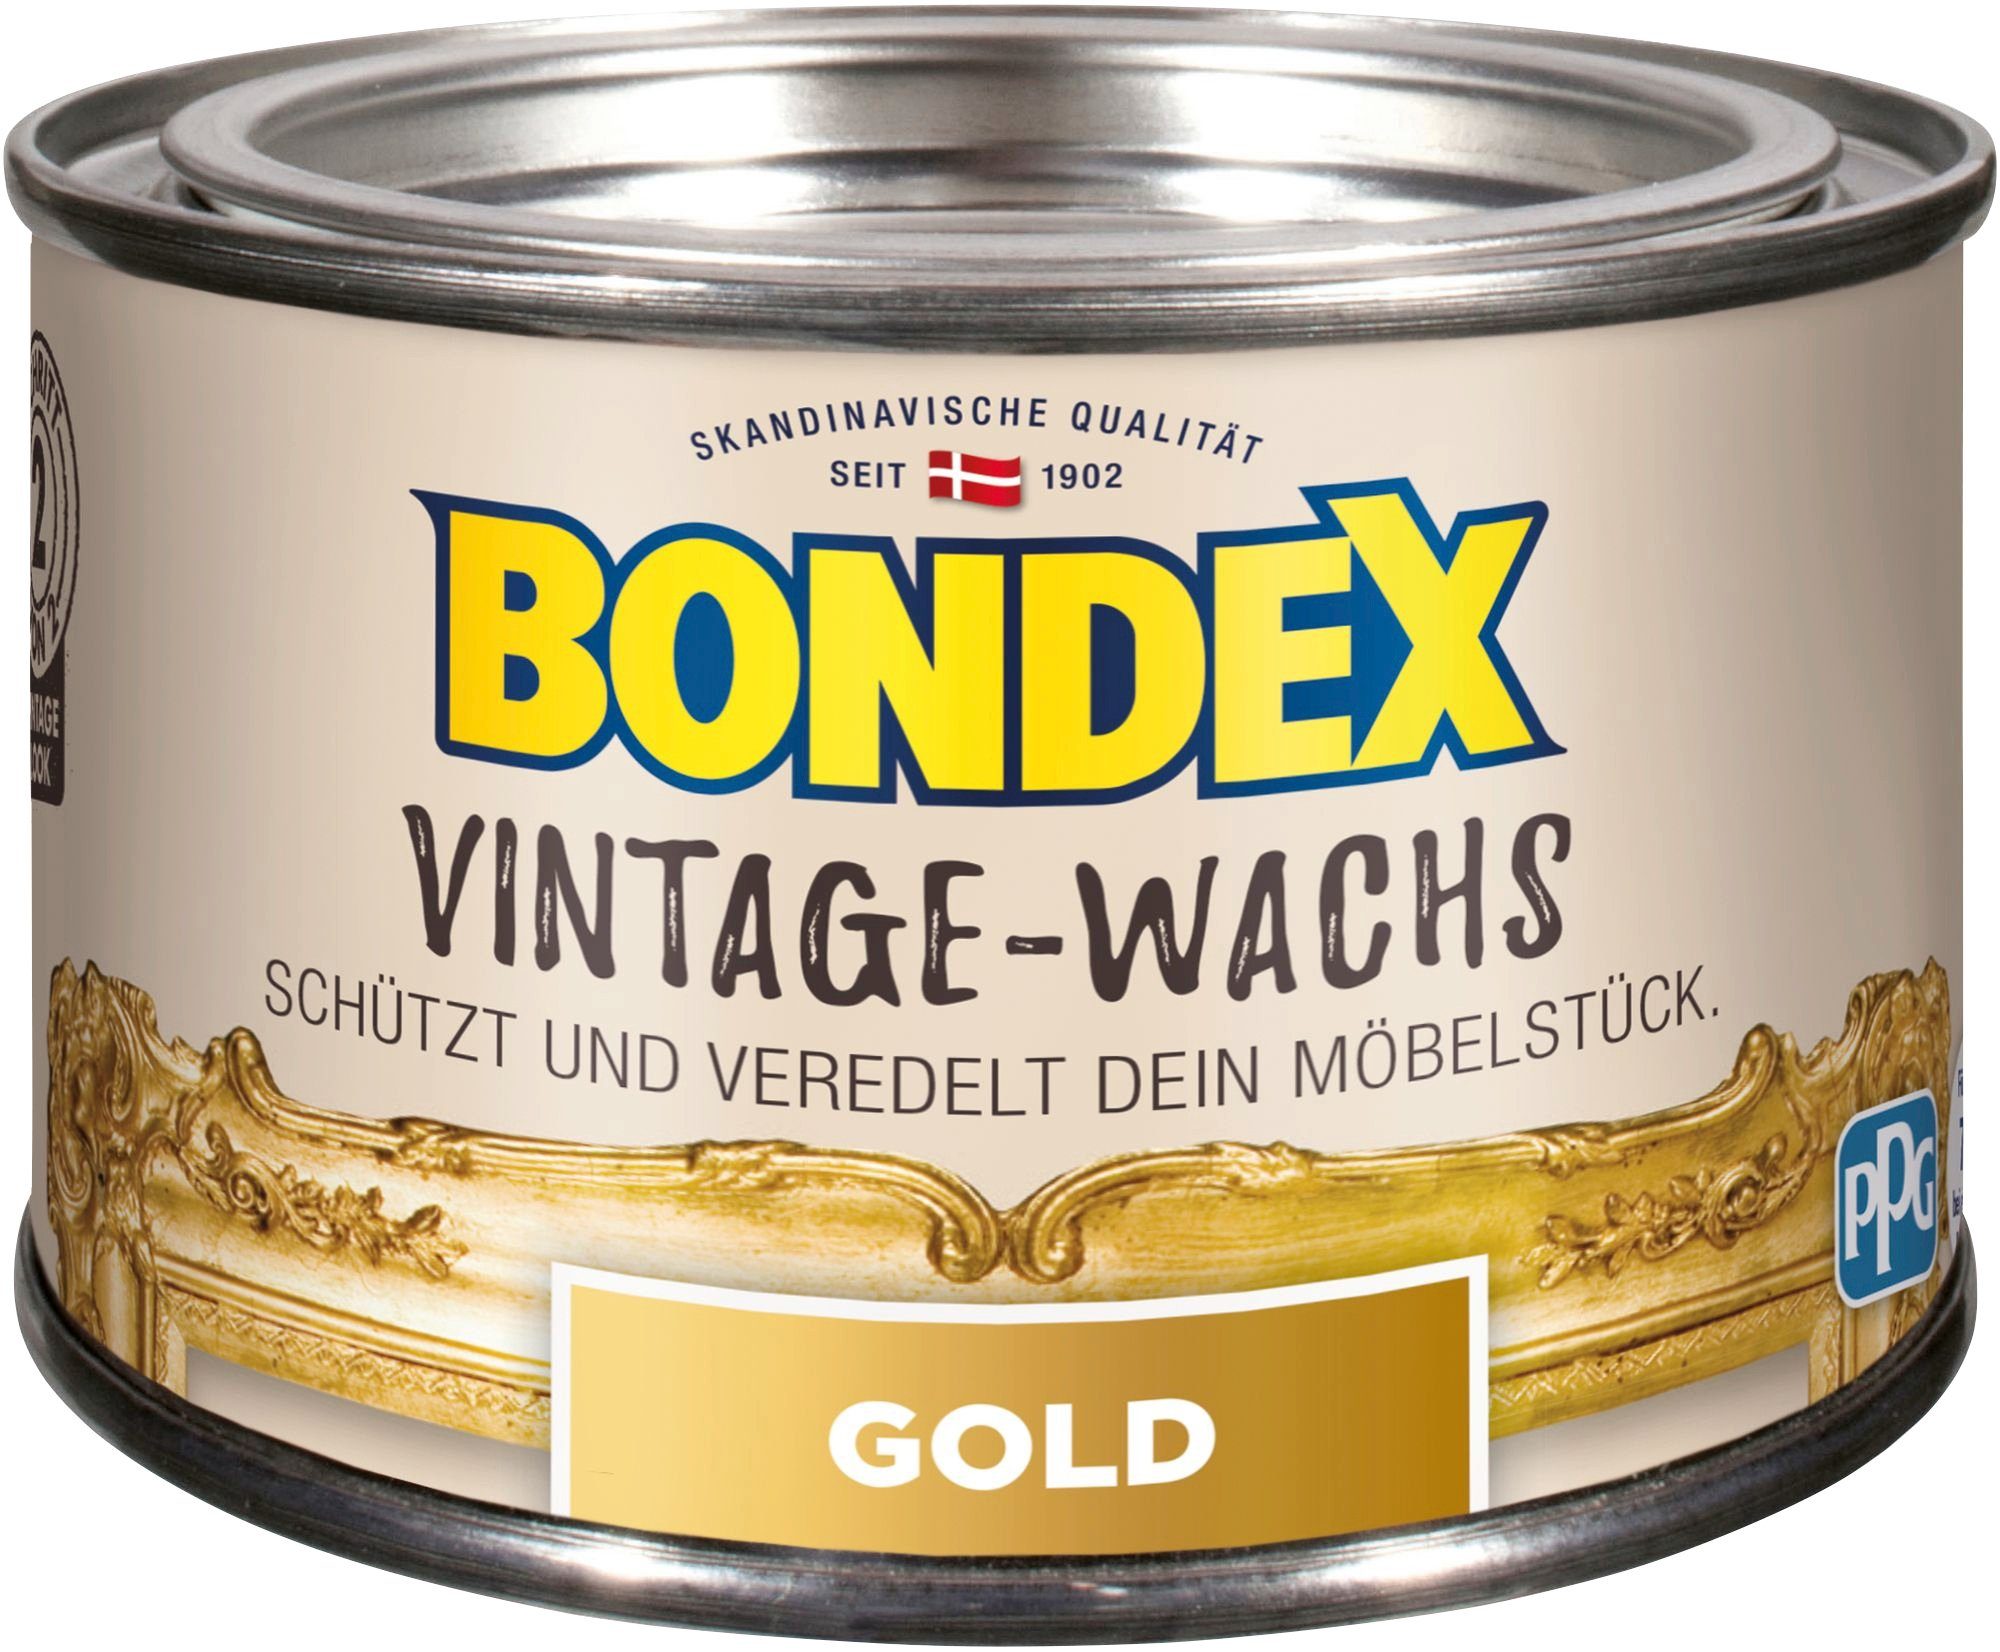 Bondex VINTAGE-WACHS Grau Schutzwachs, zum Schutz und Veredelung der Möbelstücke, 0,25 l goldfarben | Bodenpflege